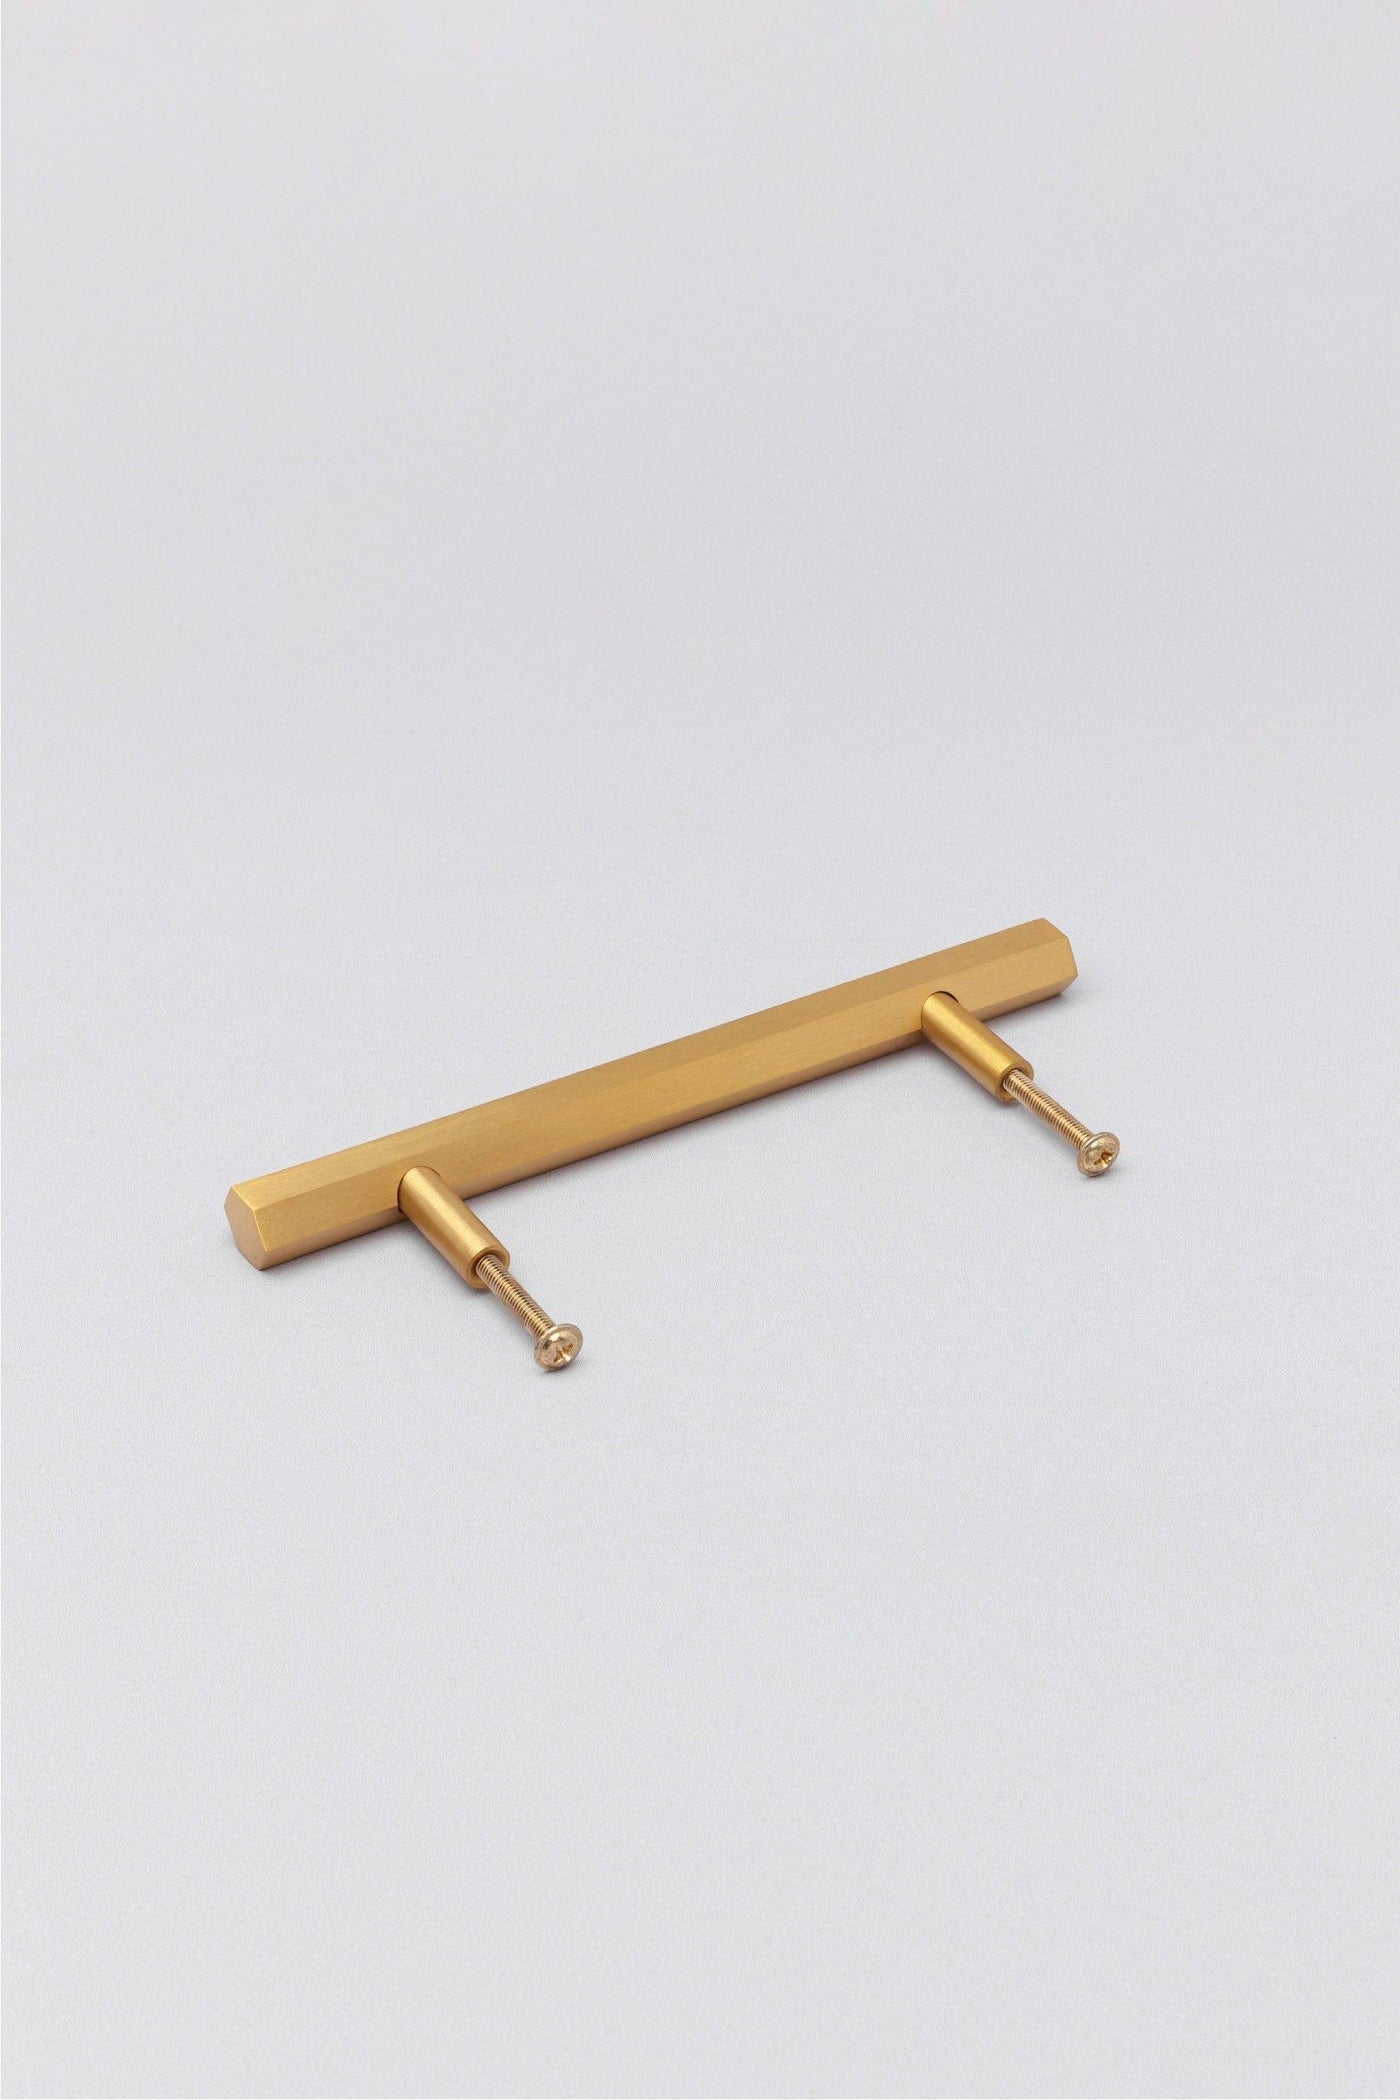 Gdecorstore Cabinet Knobs & Handles Brass Matt Solid Knurled T Bar Kitchen Gold Cupboard Handles